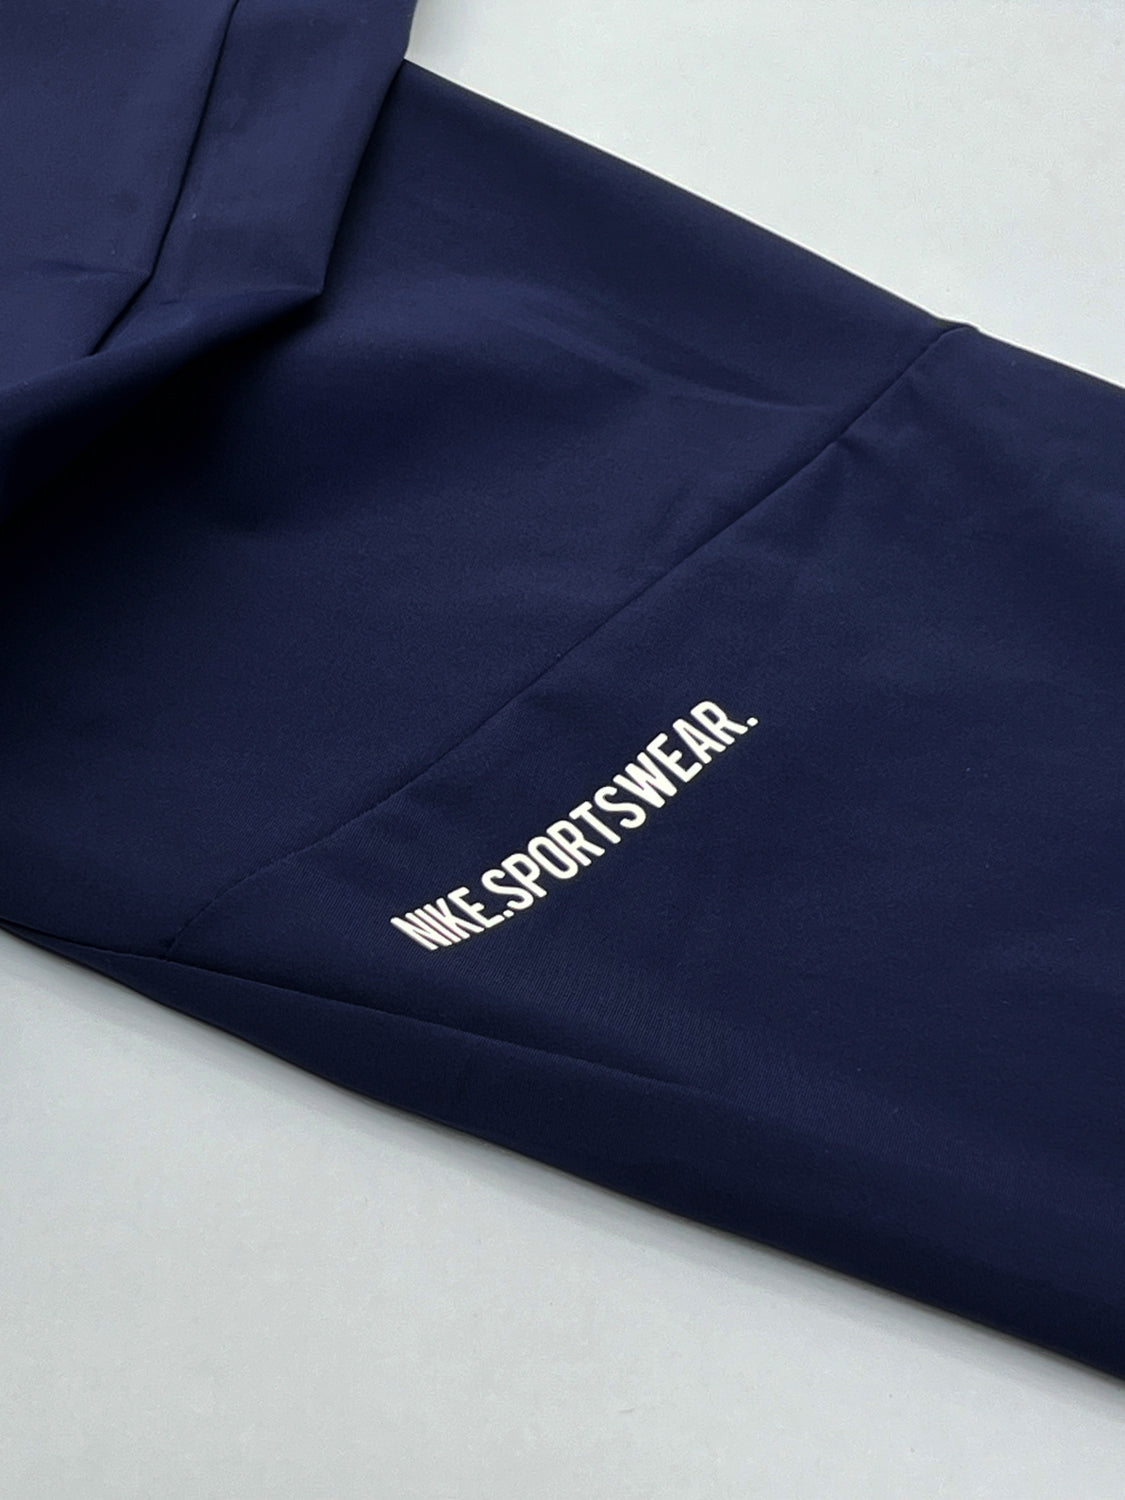 Nke Bottom Slogan Imported Trouser In Navy Blue